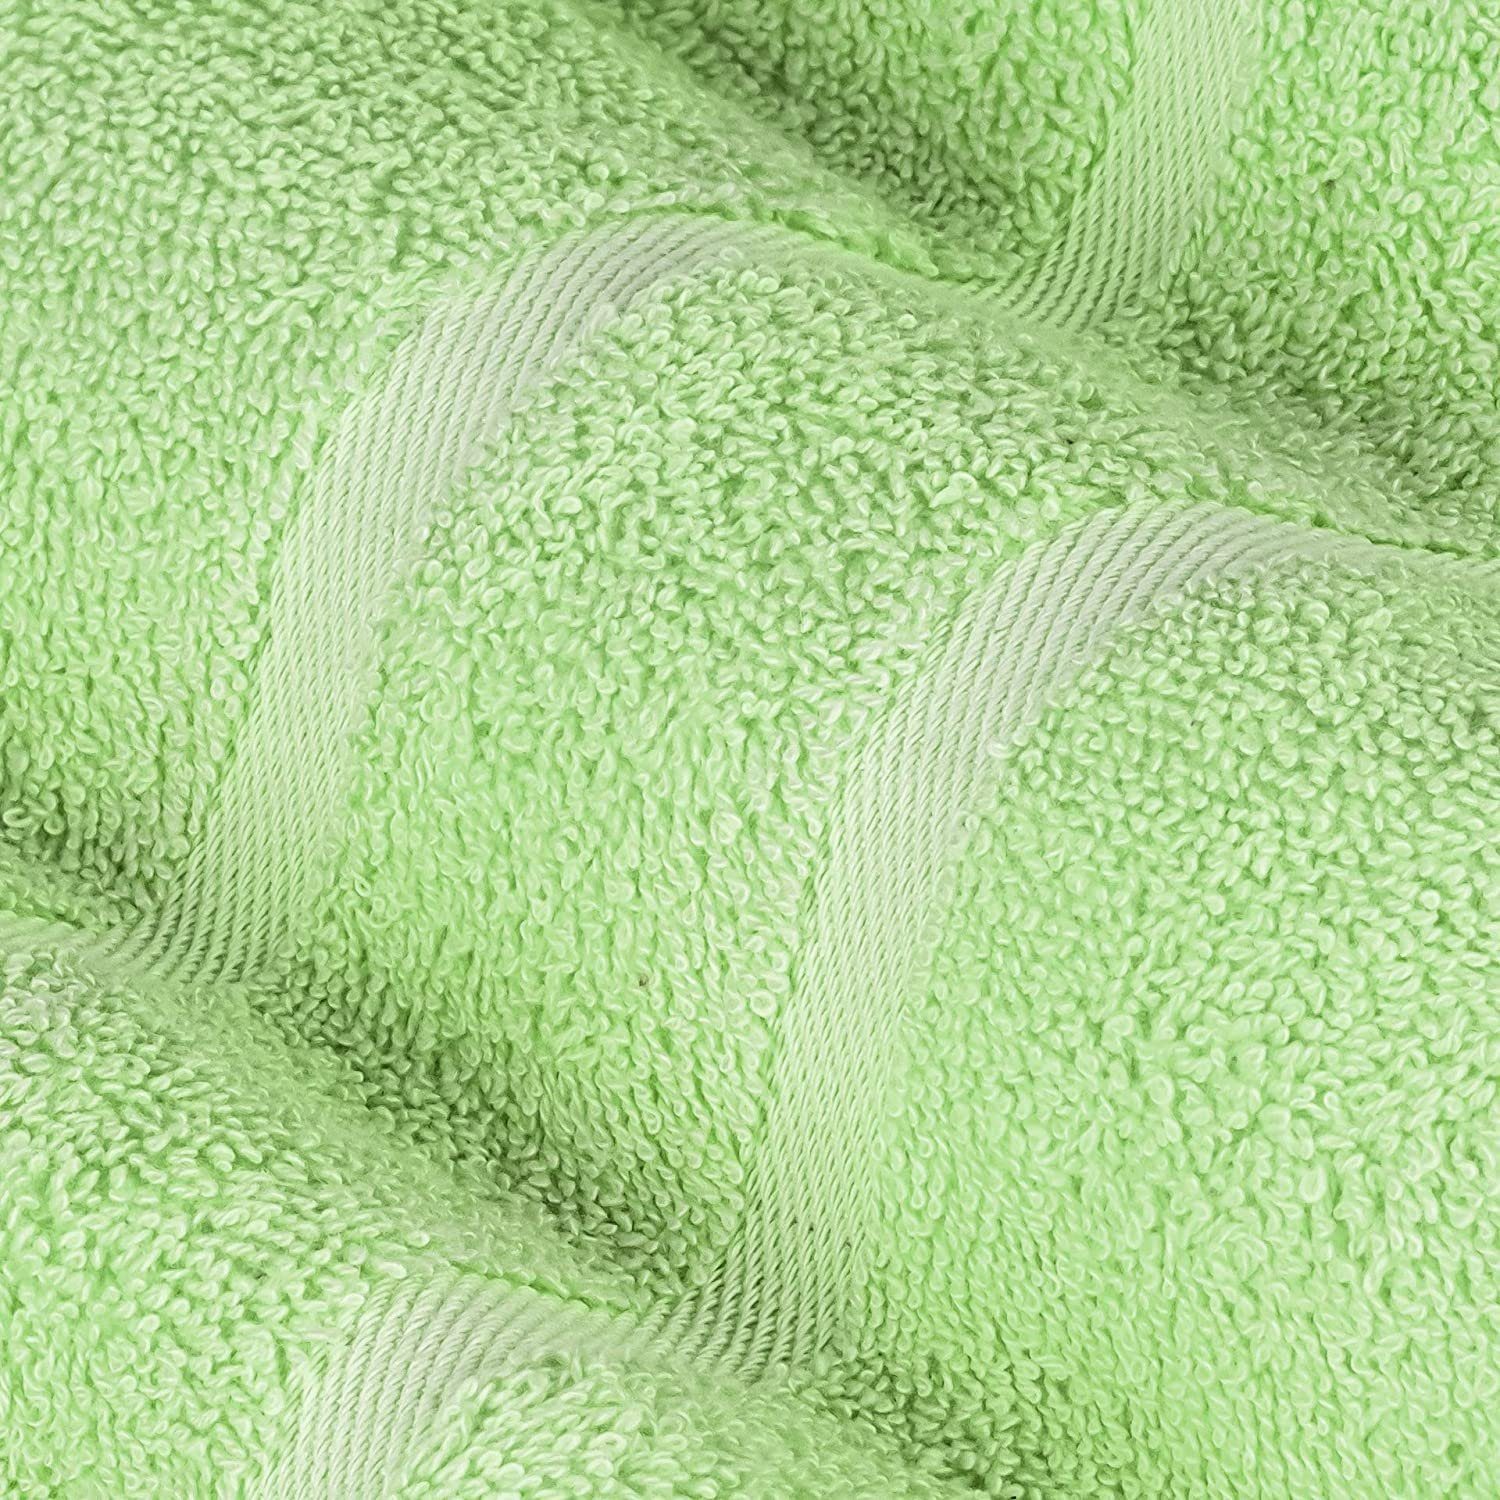 StickandShine Handtuch 2er Frottee Premium aus 100% 100% in (2 Hellgrün 50x100 500g/m² 500GSM Handtuch Frottee cm Baumwolle Stück), Baumwolle Set